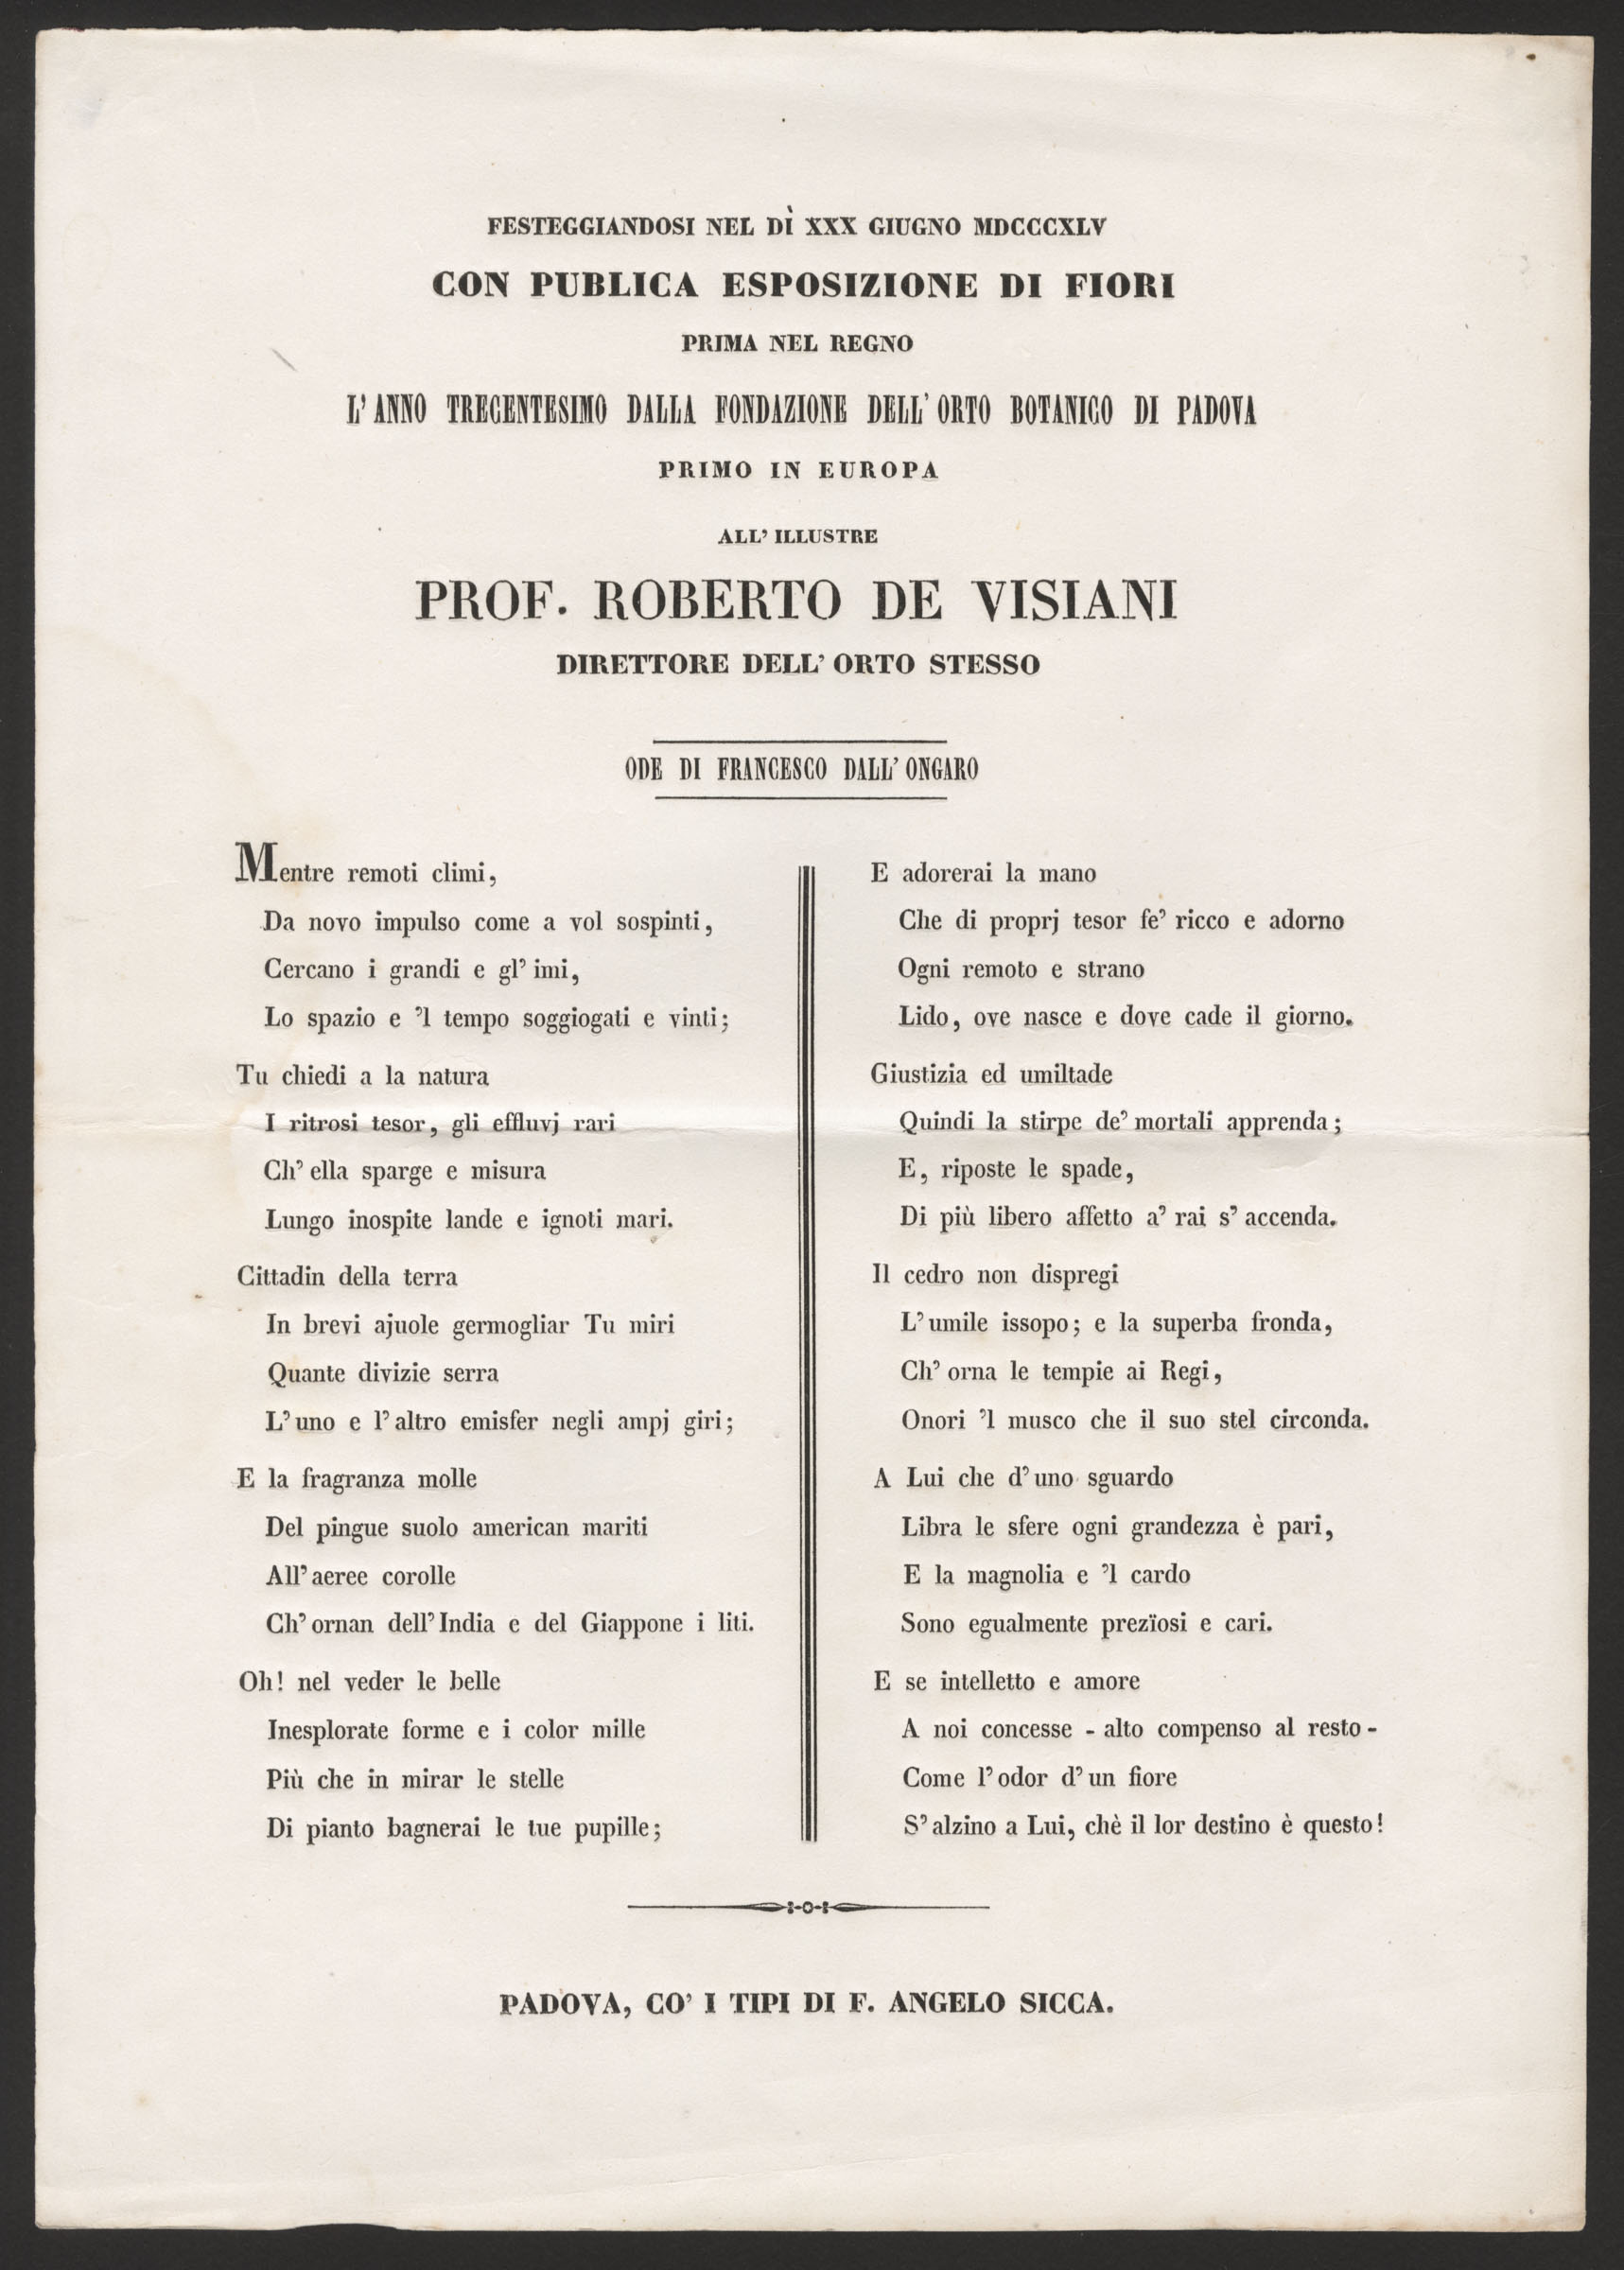 Ode di Francesco dall'Ongano a De Visiani in occasione della Festa dei Fiori